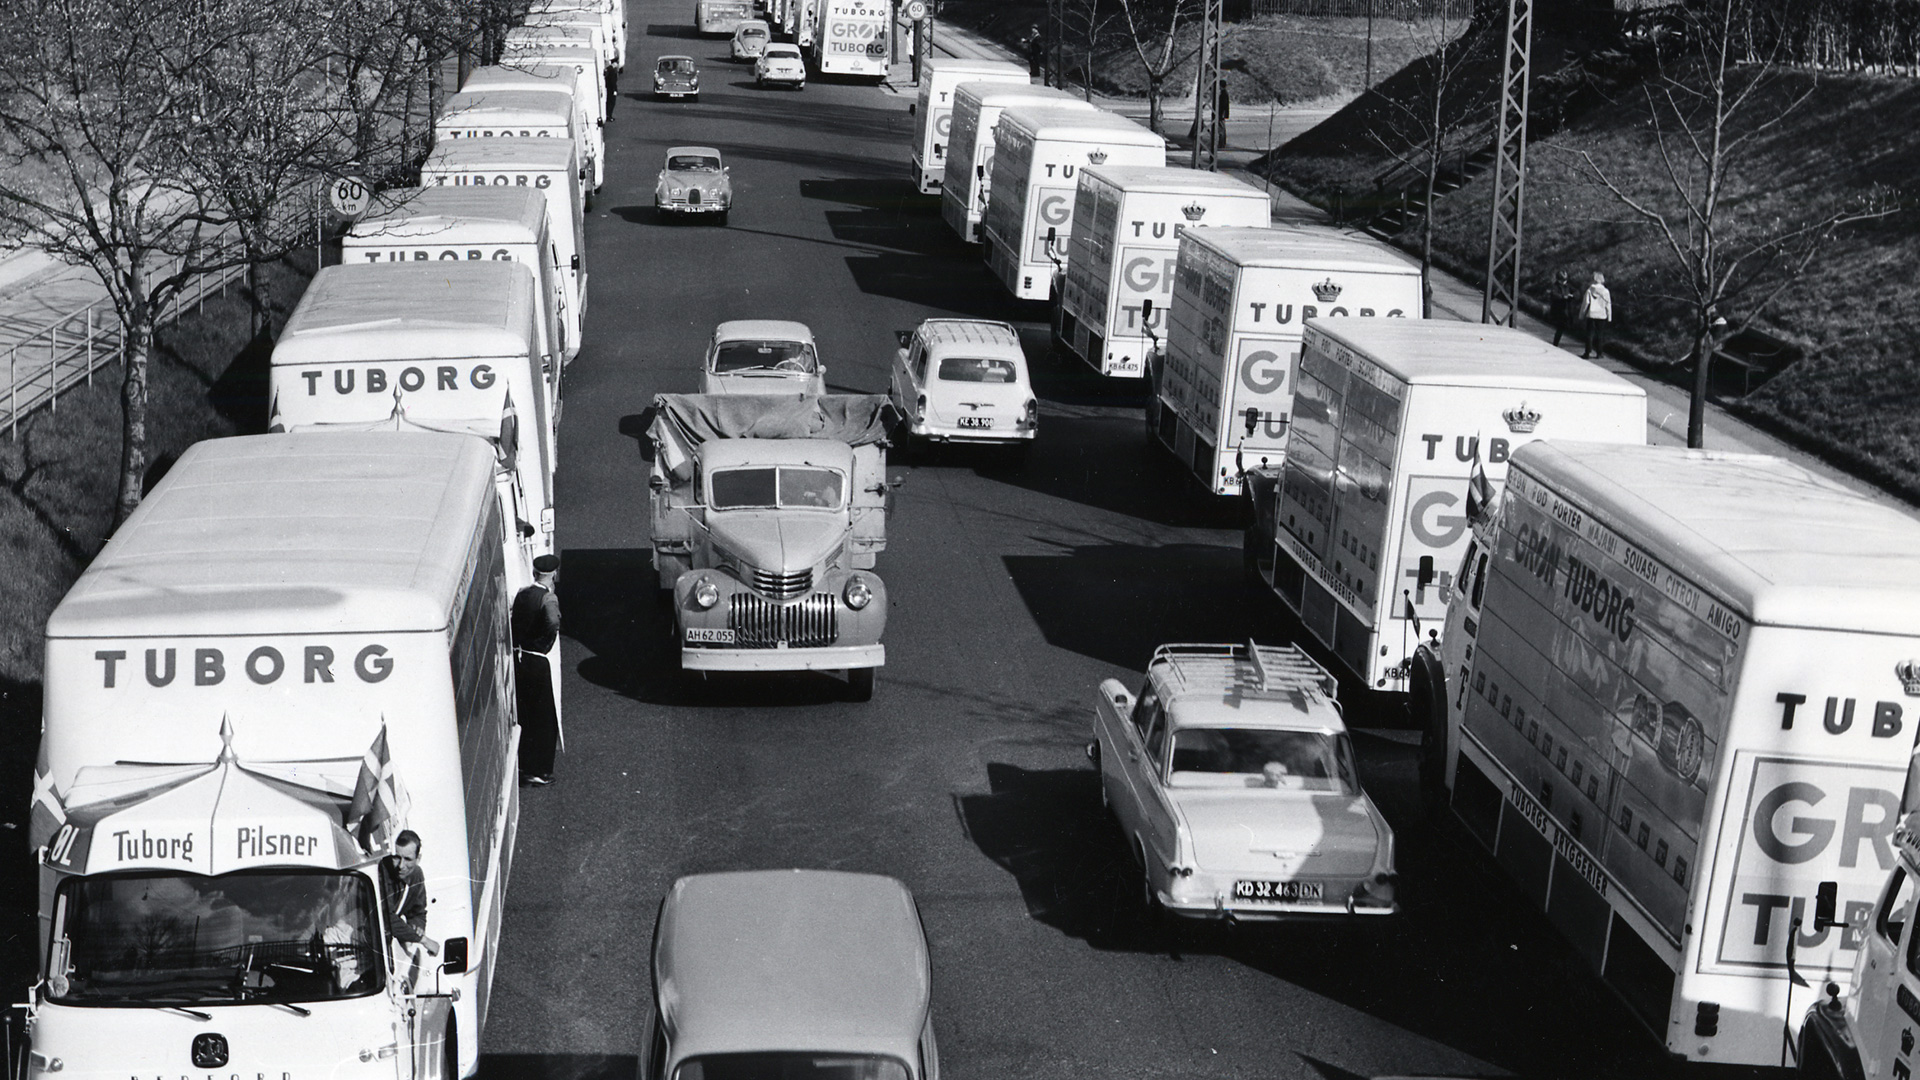 arhivska crno-bela fotografija kolone tuborg kamiona na ulici